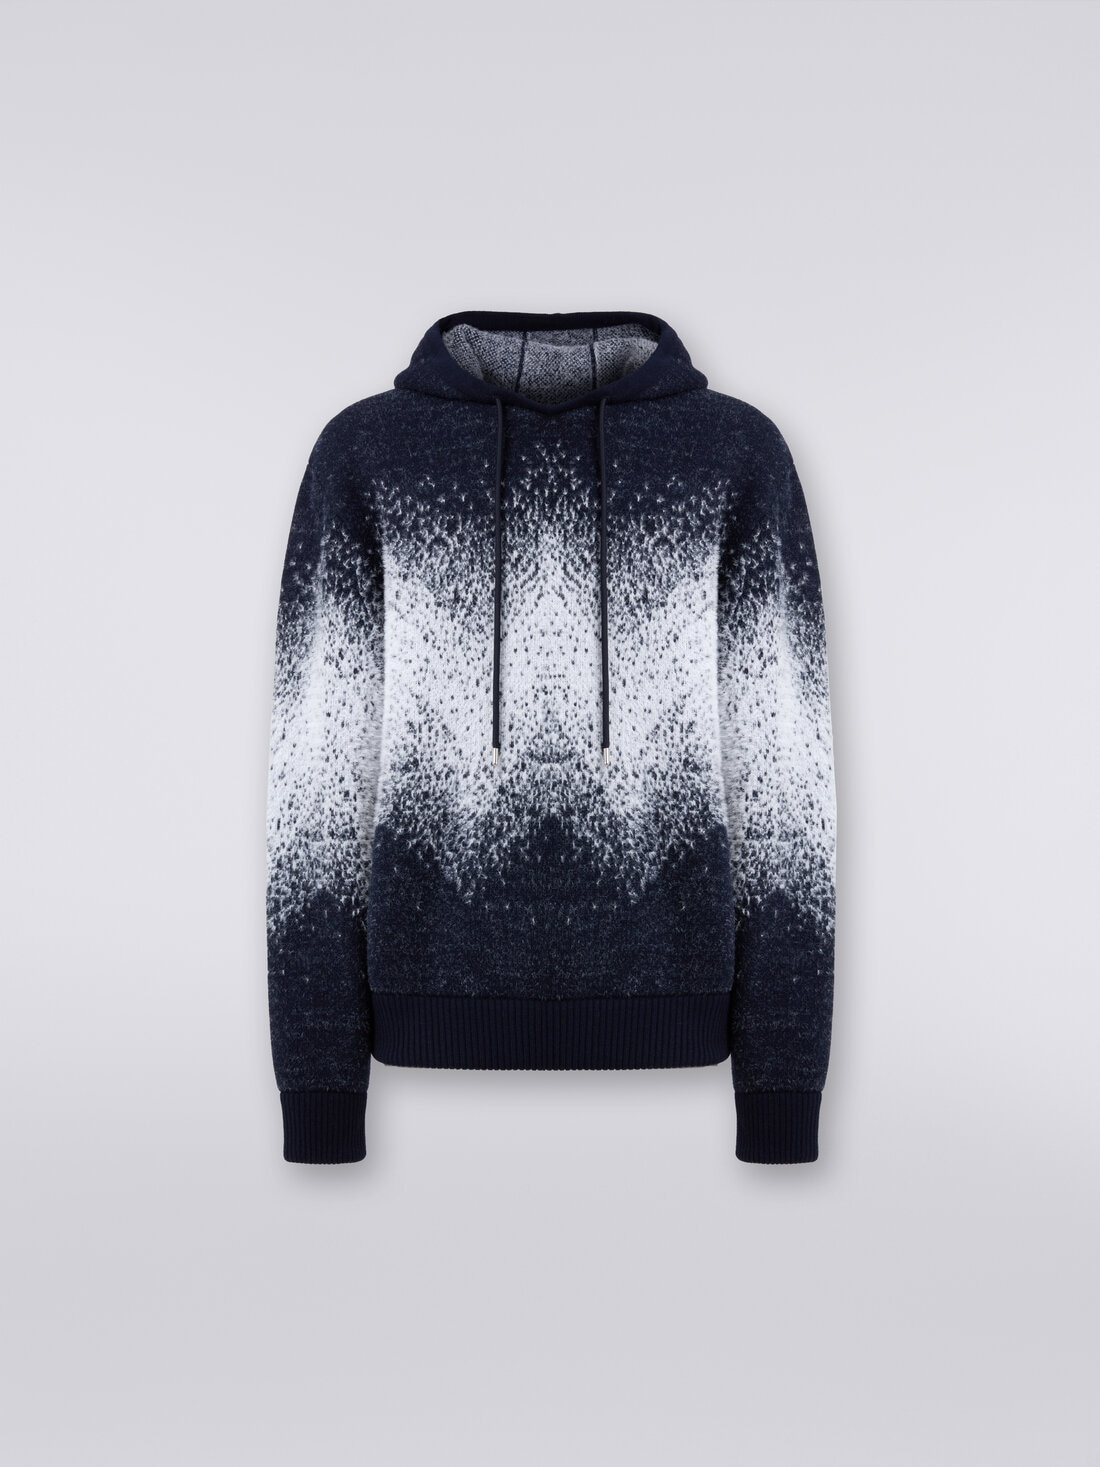 Jacquard wool blend hoodie, Multicoloured  - 8053147087481 - 0